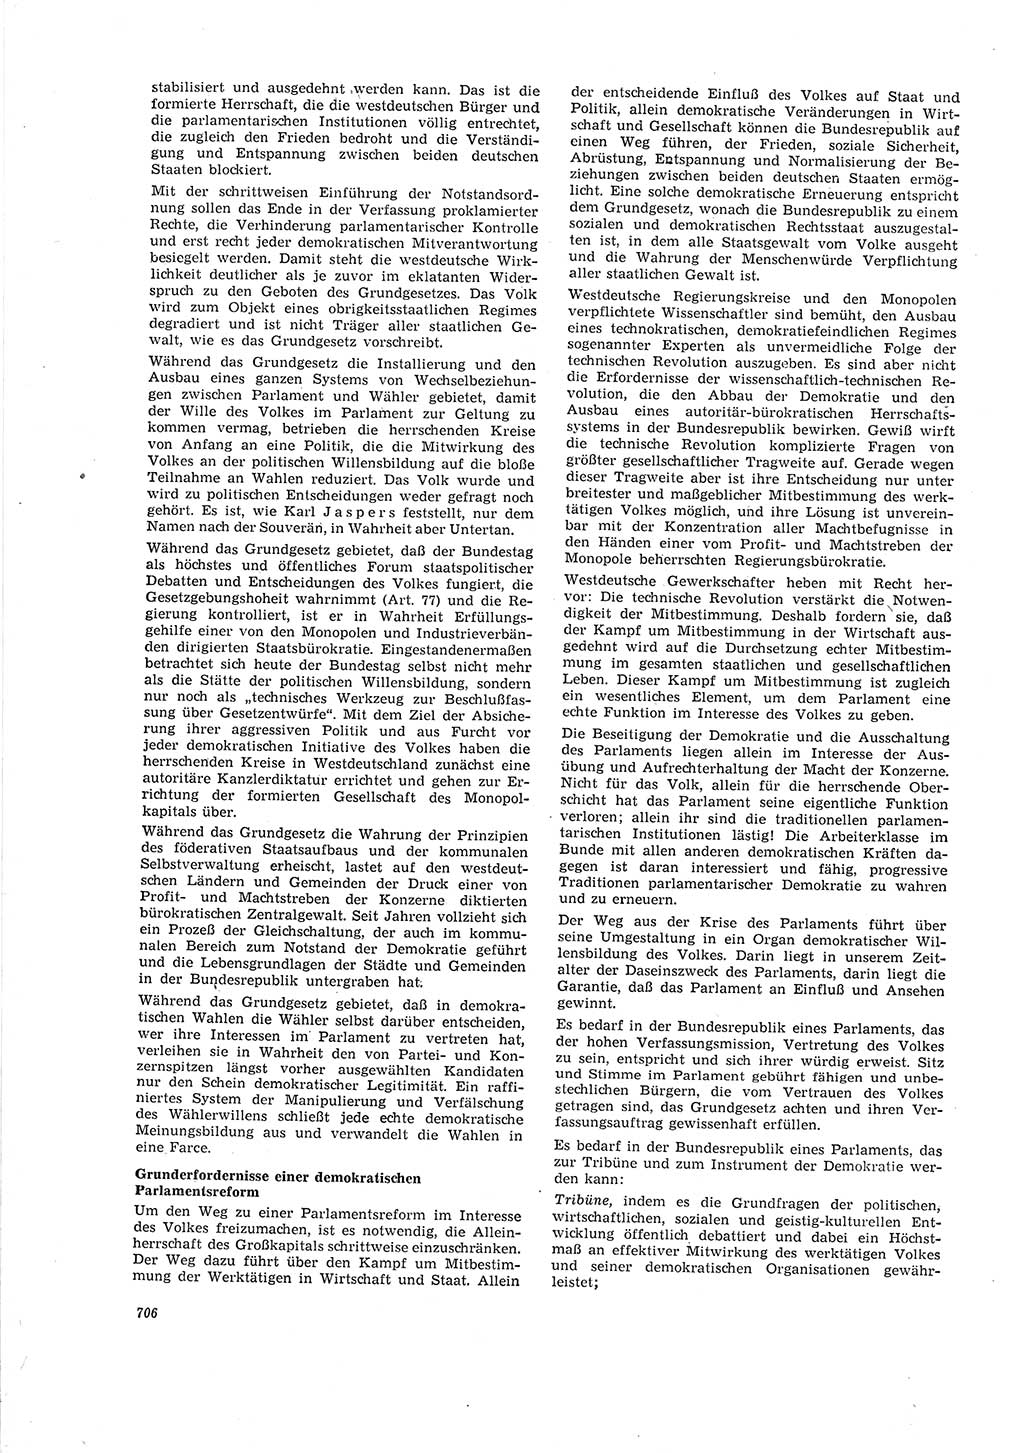 Neue Justiz (NJ), Zeitschrift für Recht und Rechtswissenschaft [Deutsche Demokratische Republik (DDR)], 20. Jahrgang 1966, Seite 706 (NJ DDR 1966, S. 706)